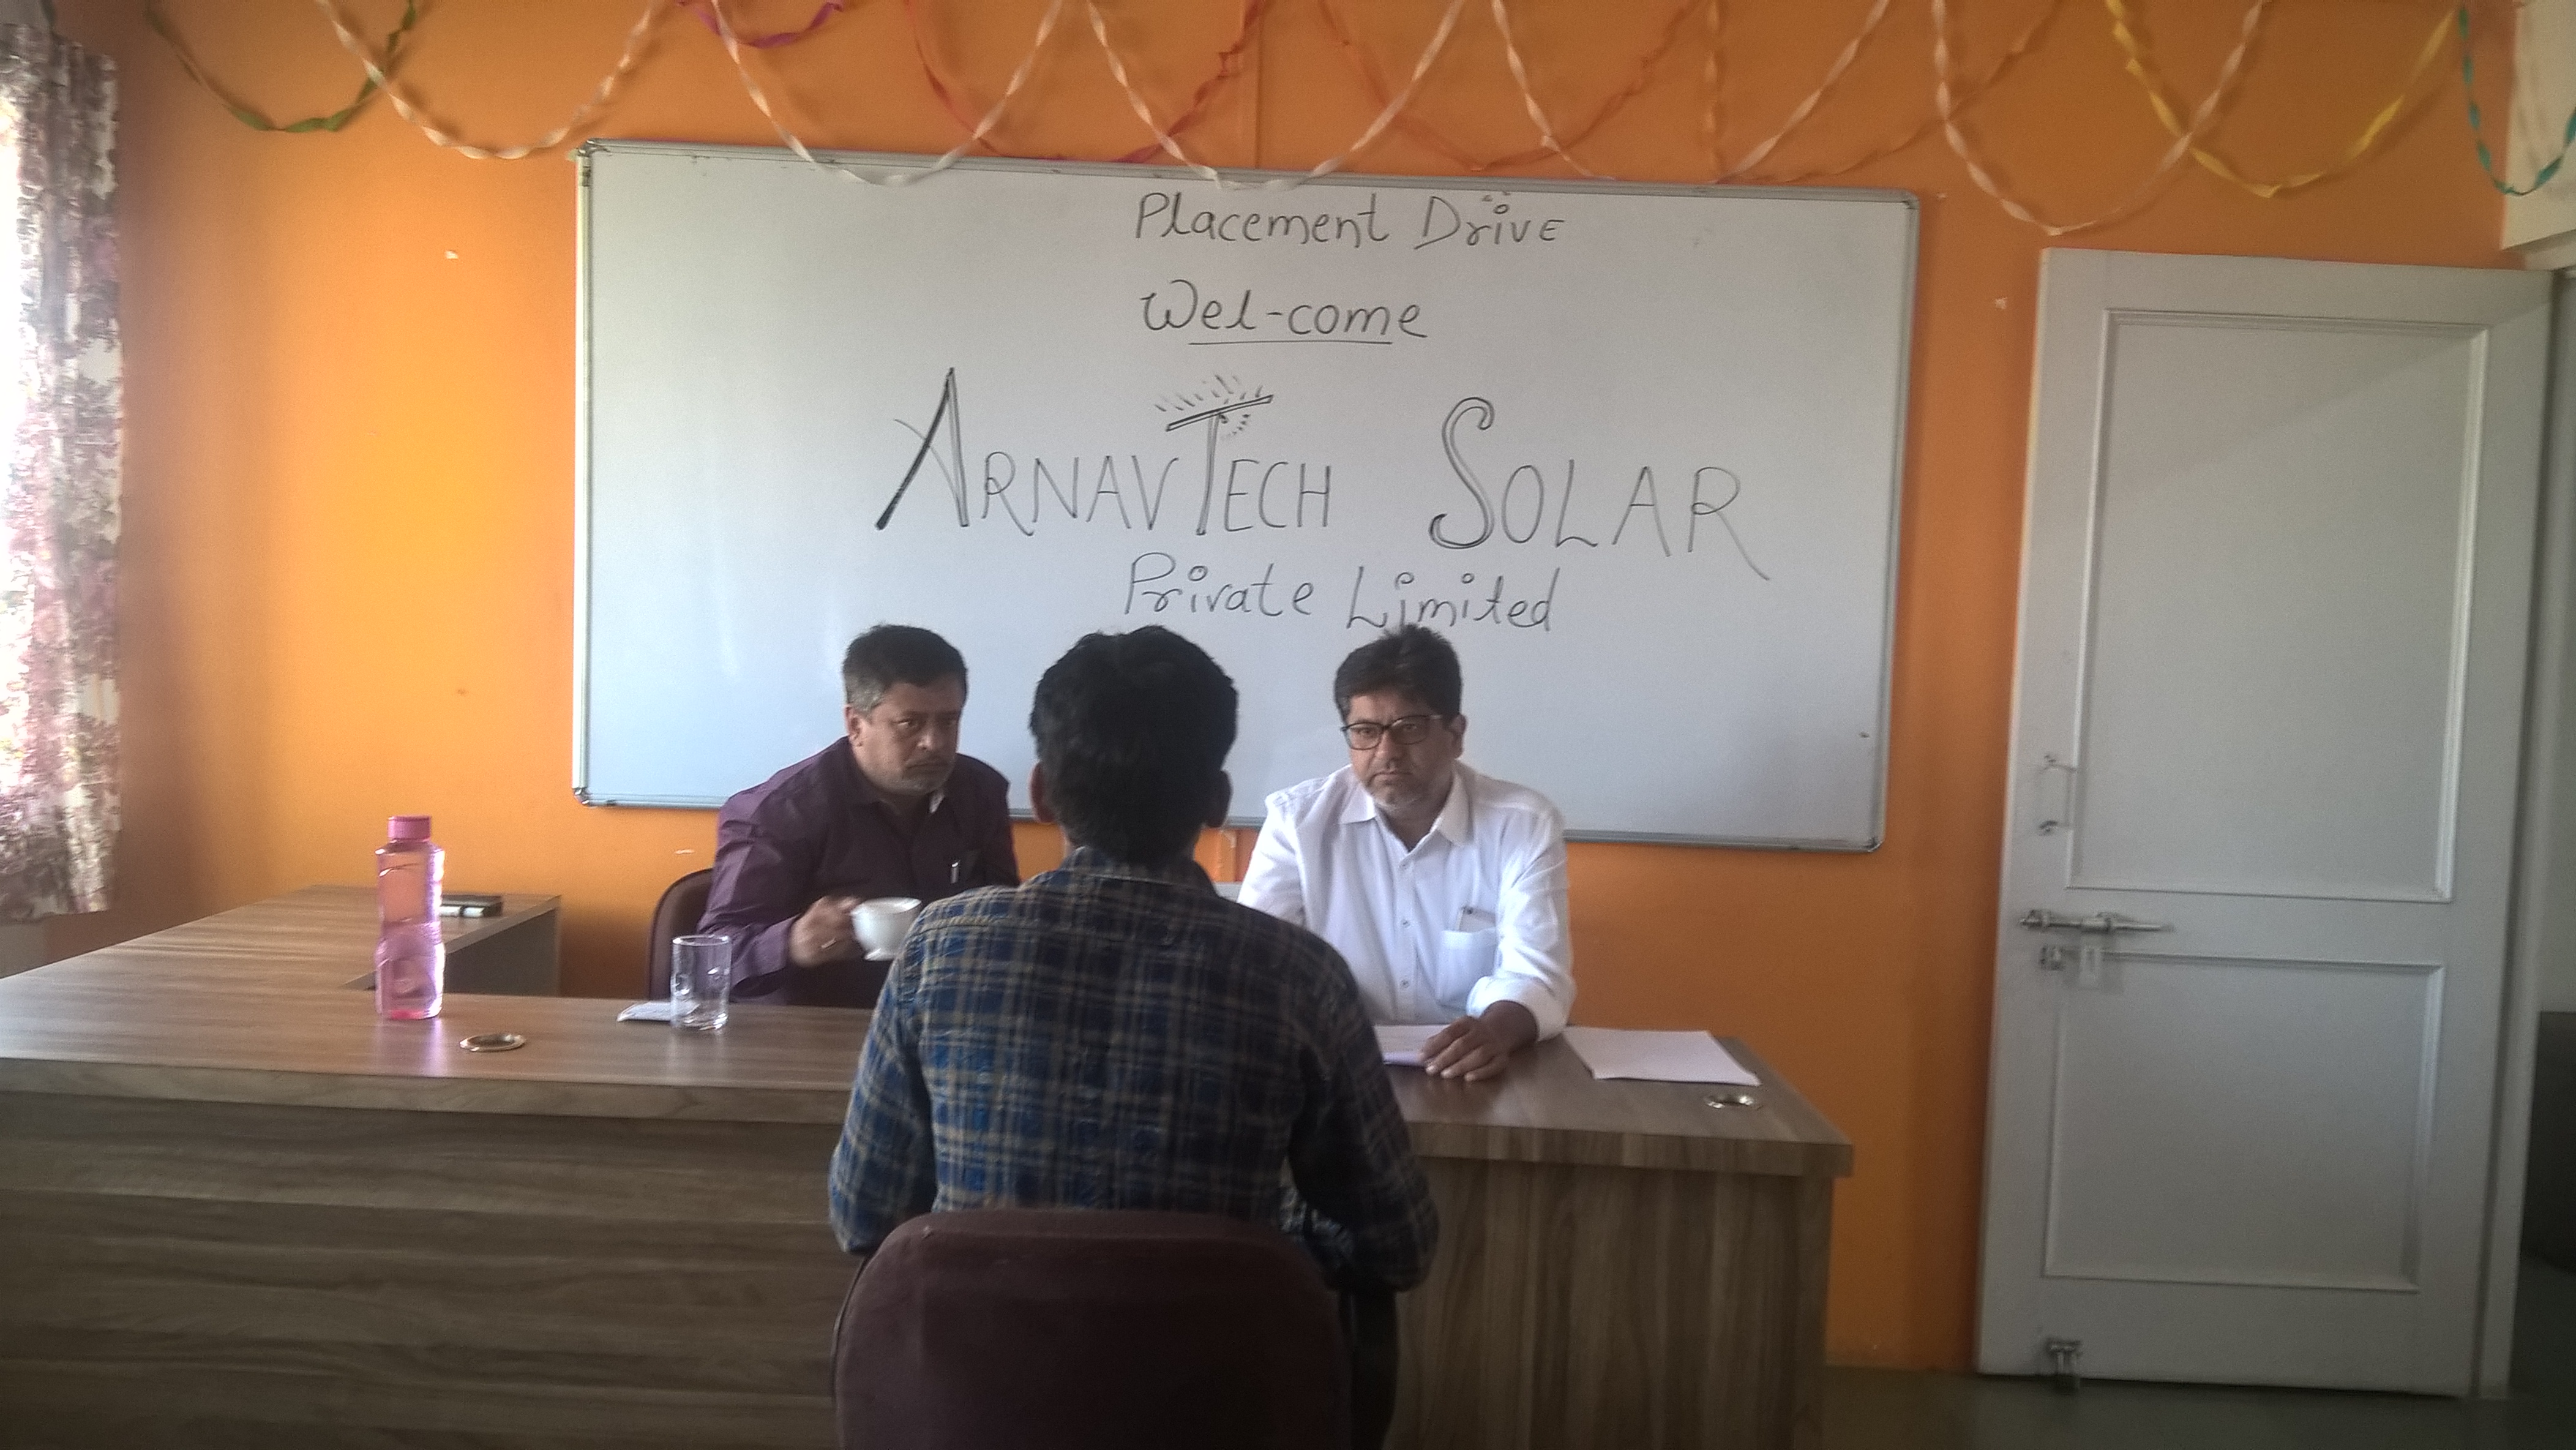 ArnavTech solar